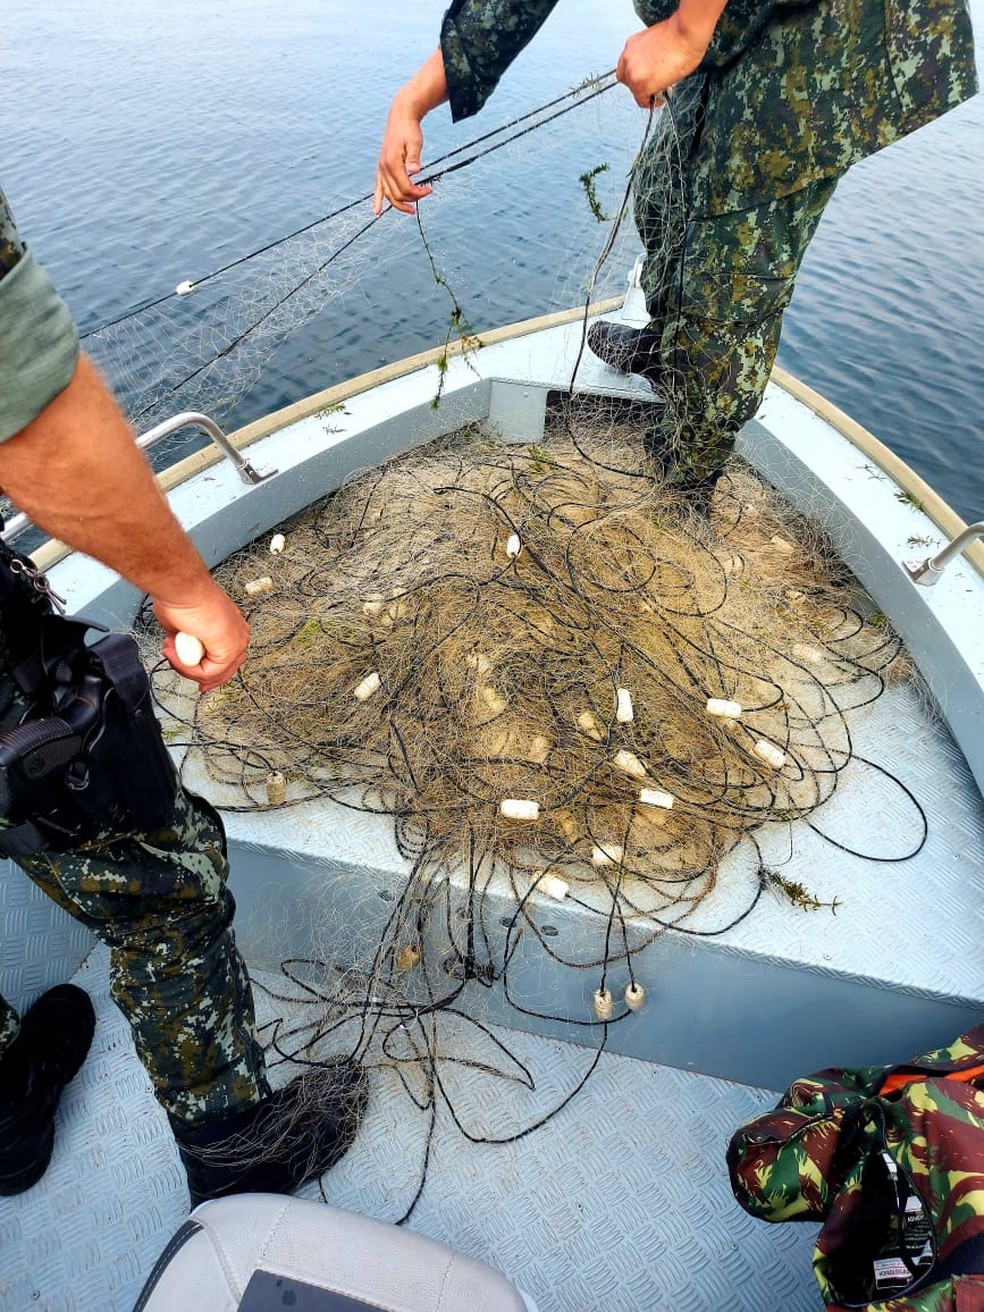 Redes de pesca irregulares foram apreendidas no Rio Paraná — Foto: Polícia Militar Ambiental